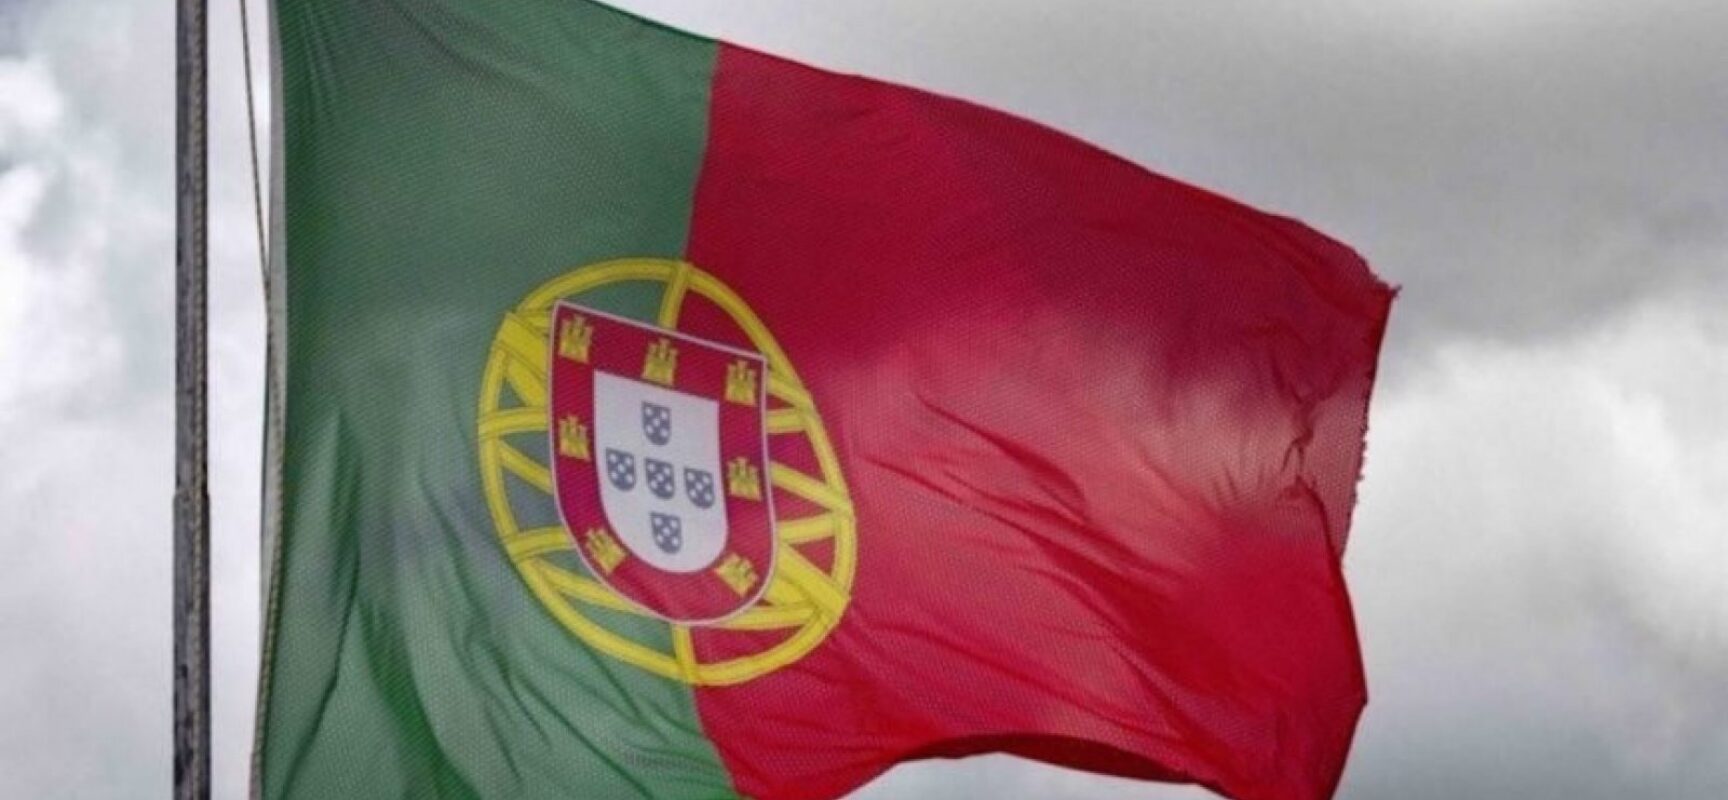 Portugal rompe acordo de reciprocidade para advogados brasileiros, diz jornal